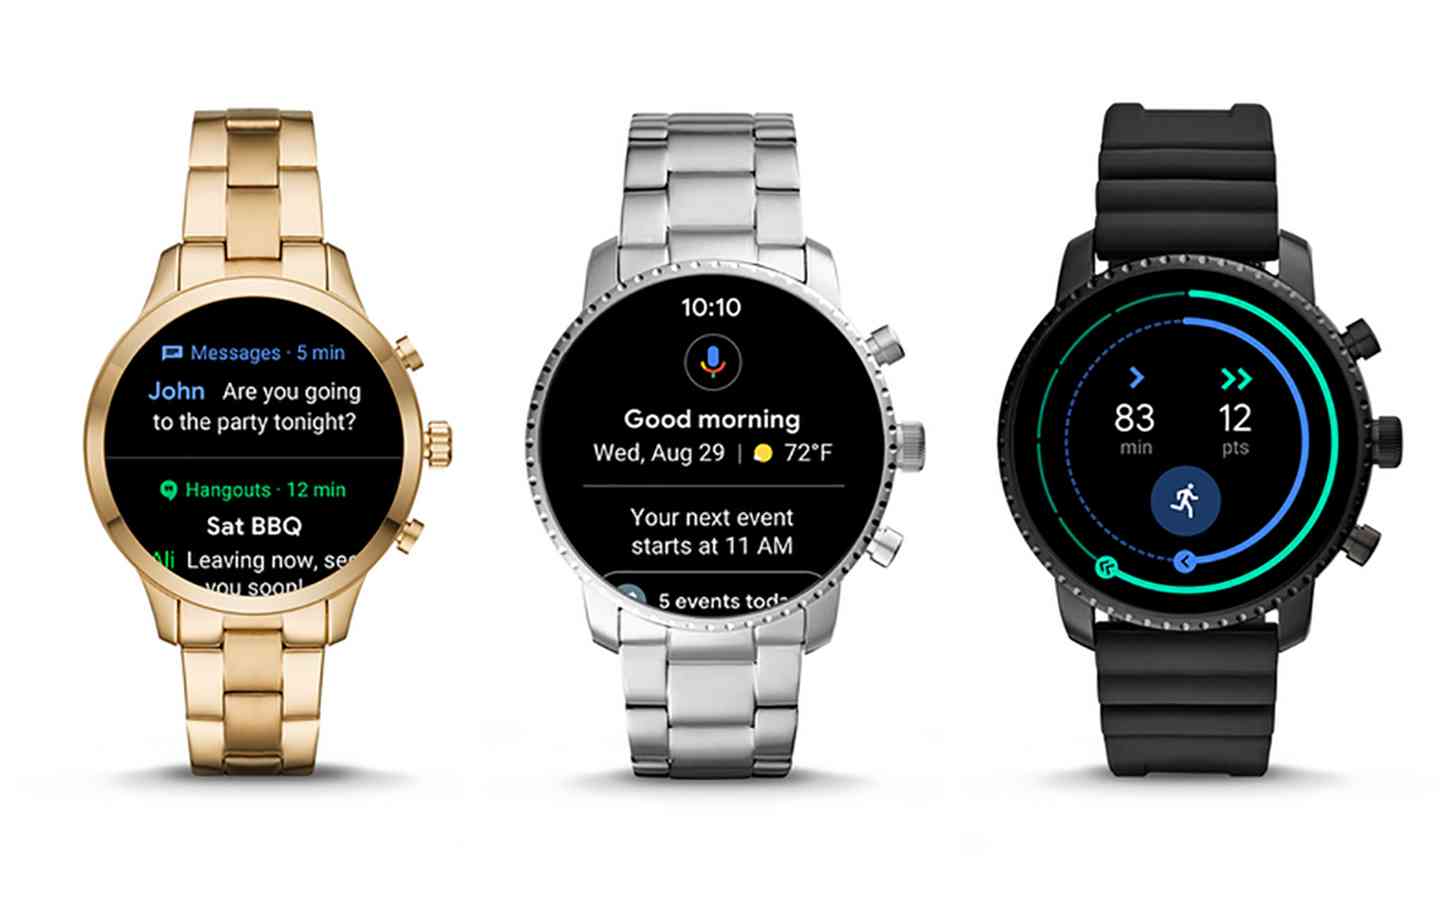 Wear OS 2.1 update smartwatches